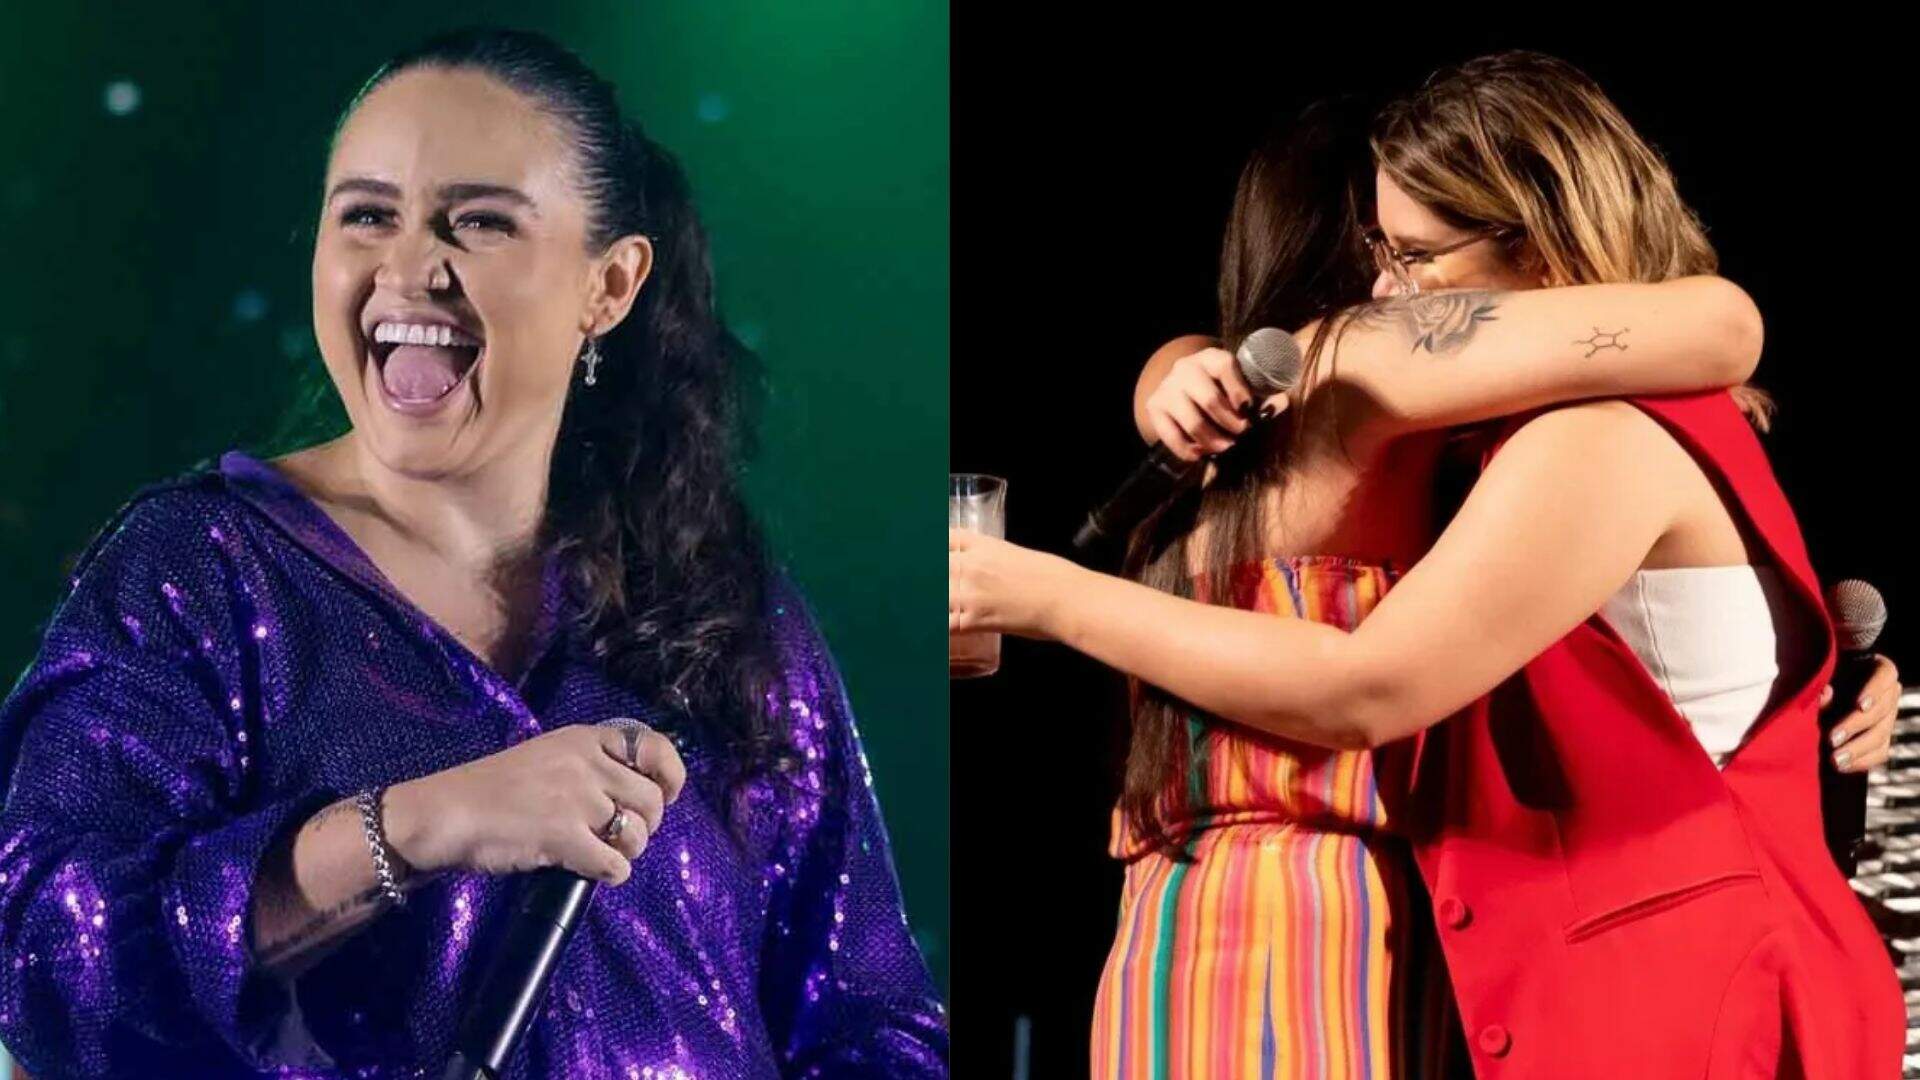 Cantora do hit ‘S de Saudade’ revela momento engraçado de Marília Mendonça: “Cara fechada” - Metropolitana FM